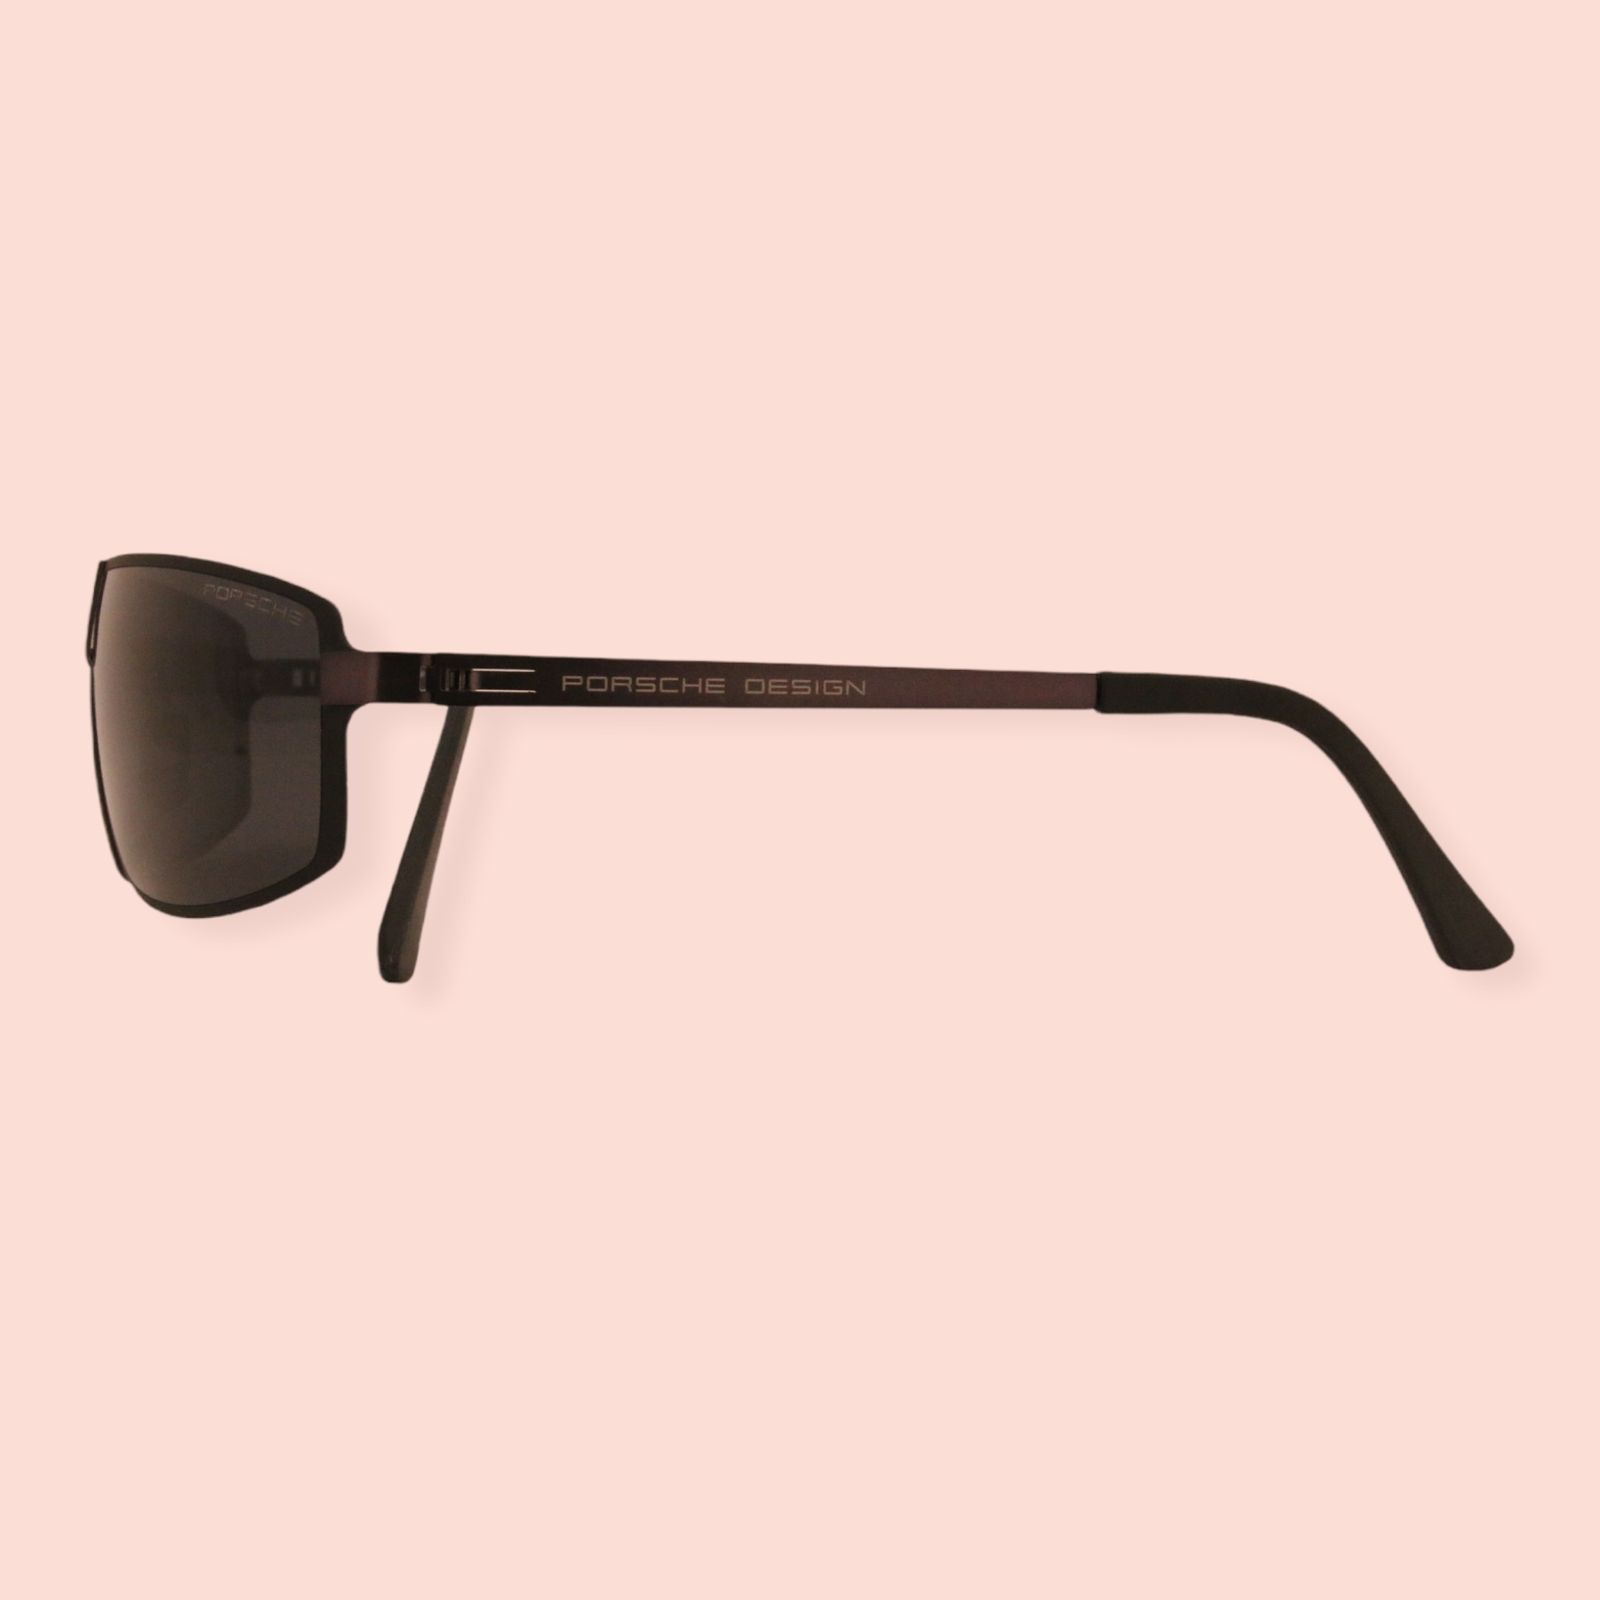 عینک آفتابی پورش دیزاین مدل P8839-C3 -  - 8